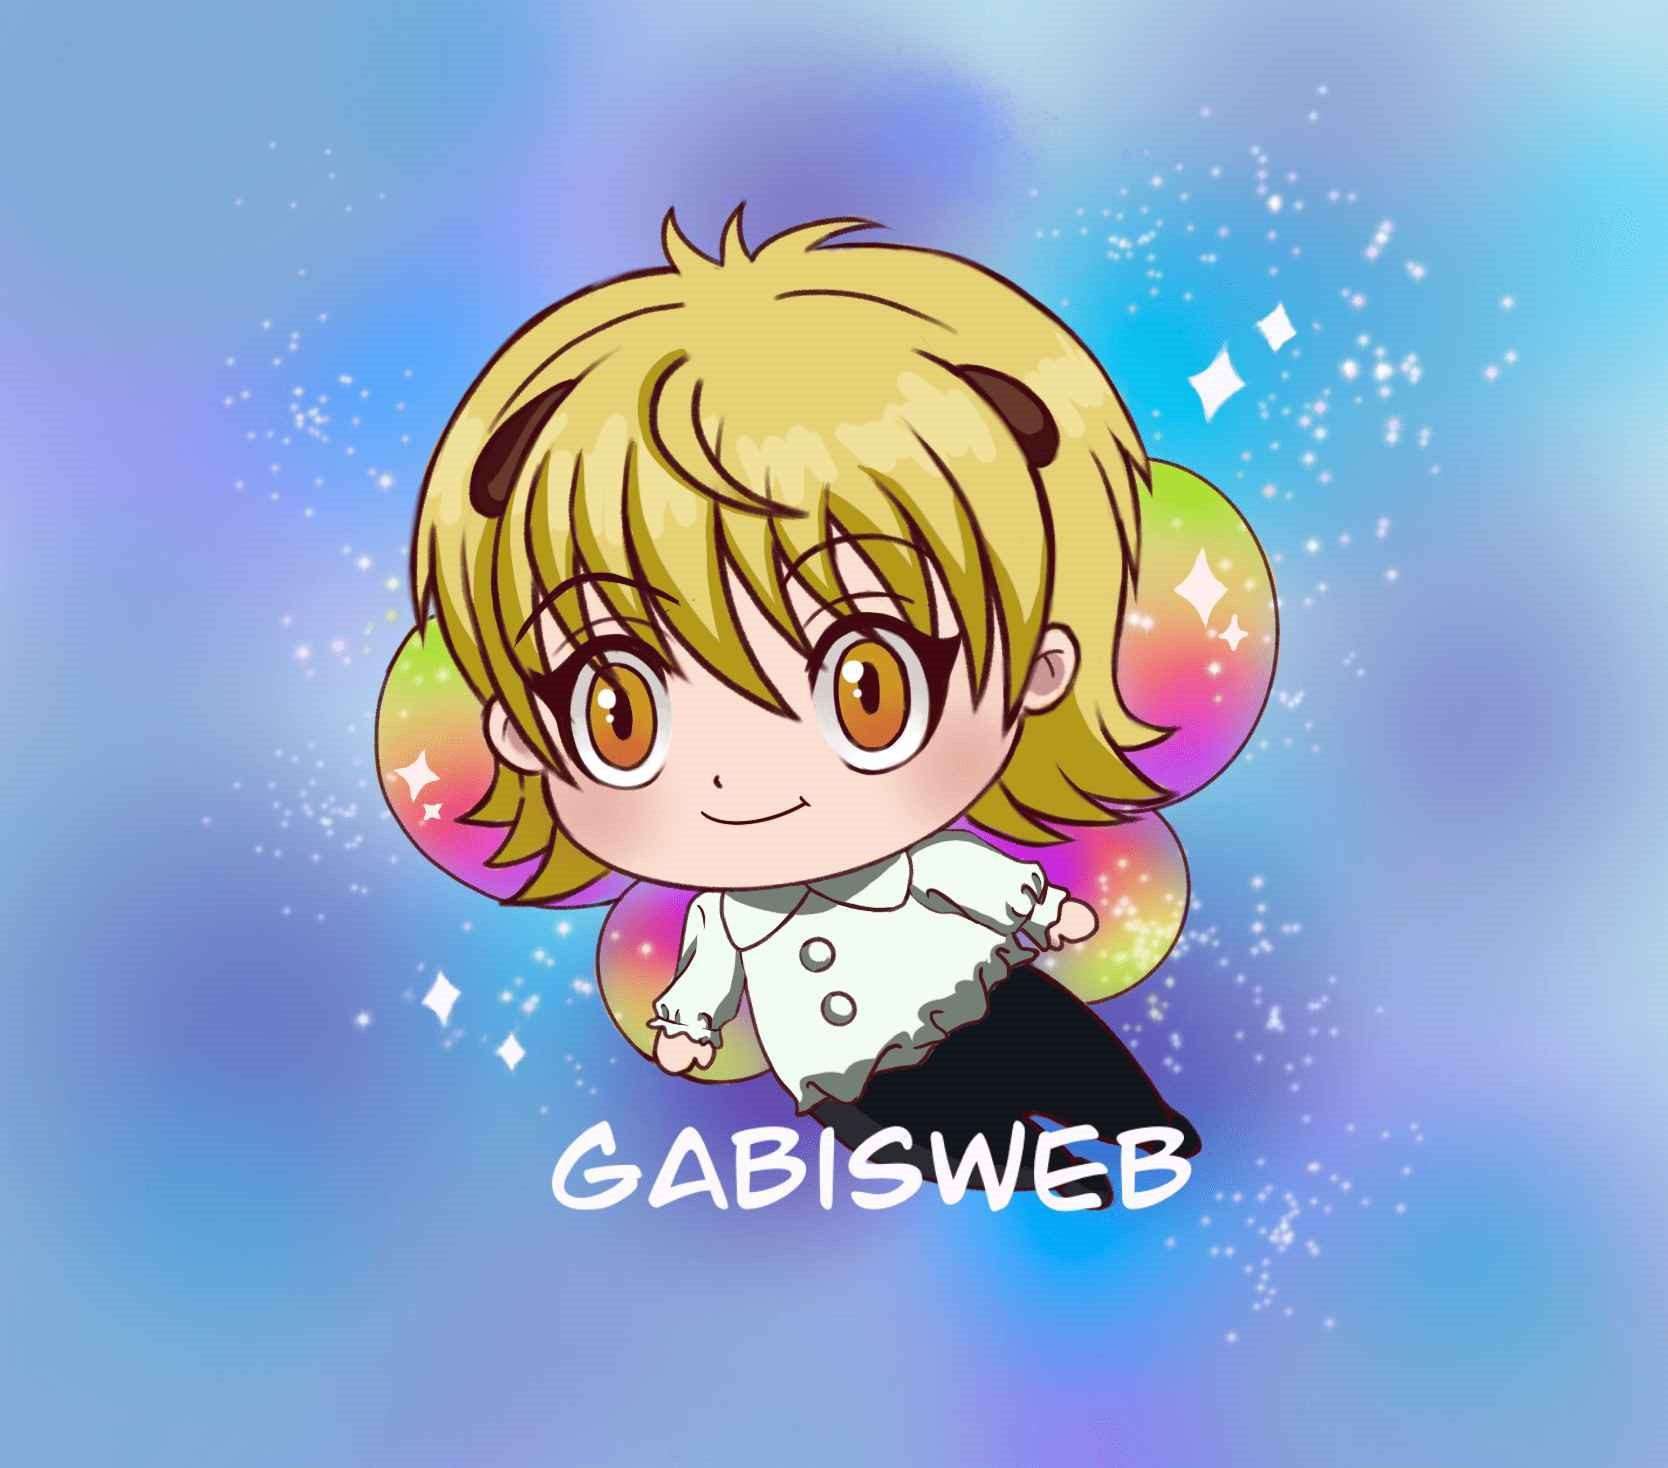 Gabisweb